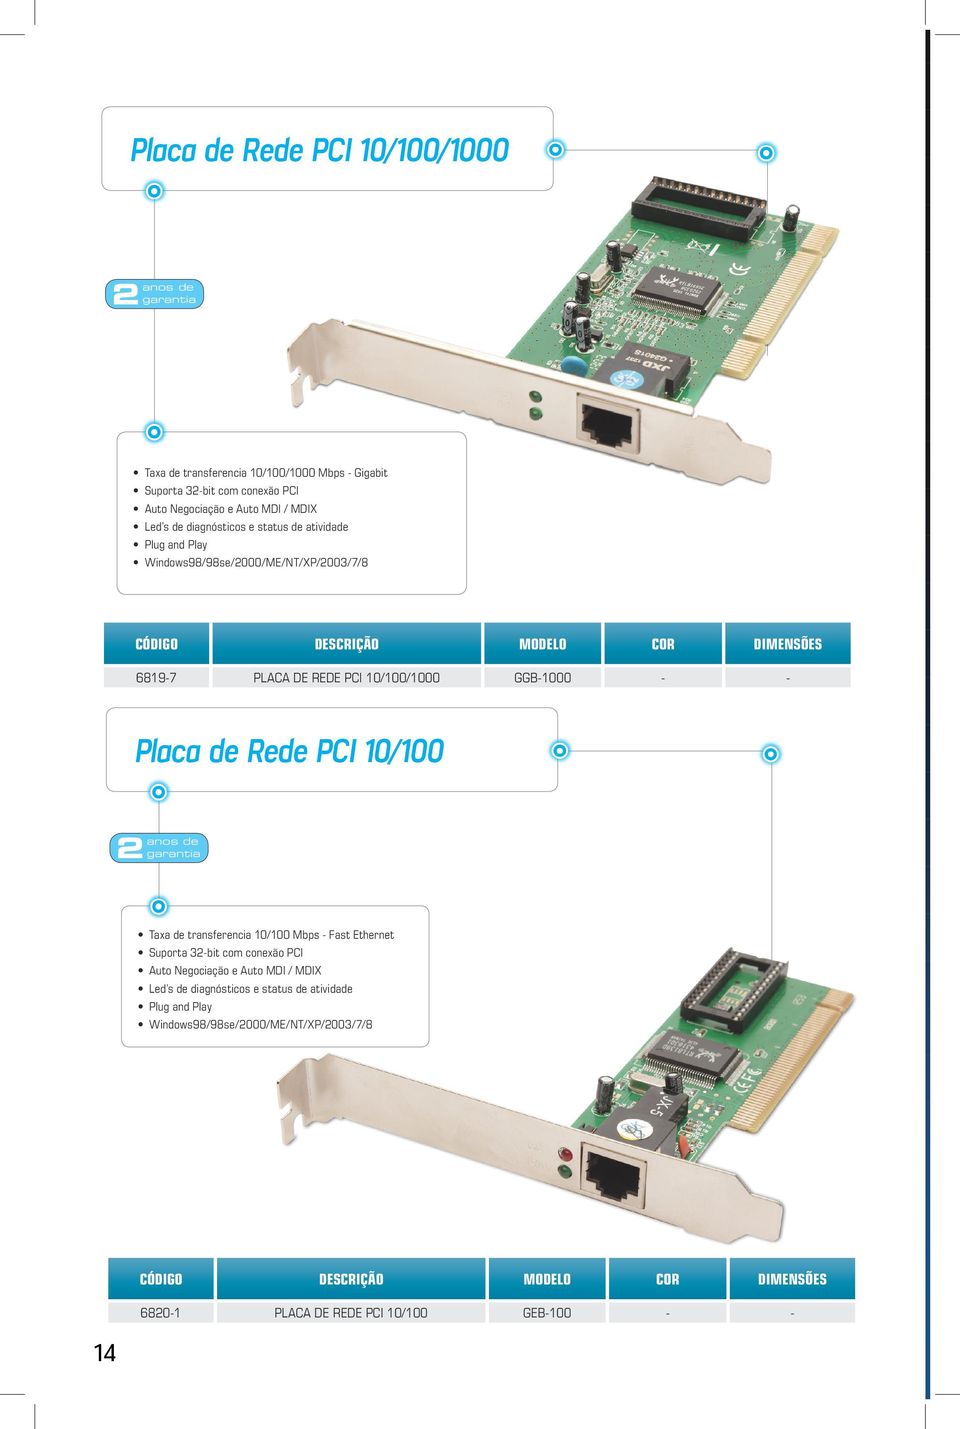 GGB-1000 - - Placa de Rede PCI 10/100 Taxa de transferencia 10/100 Mbps - Fast Ethernet Suporta 32-bit com conexão PCI Auto Negociação e Auto